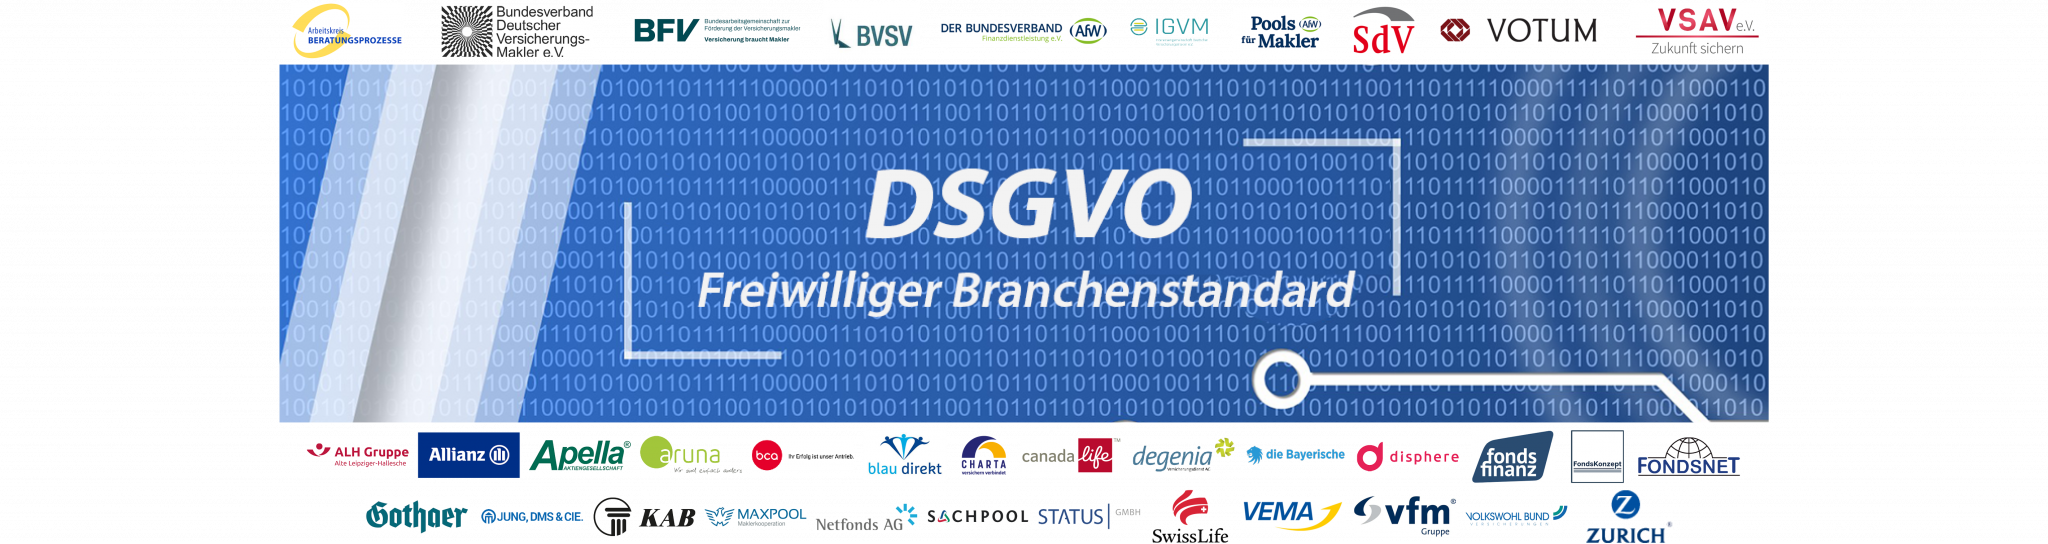 Initiative freiwilliger Branchenstandard – DSGVO